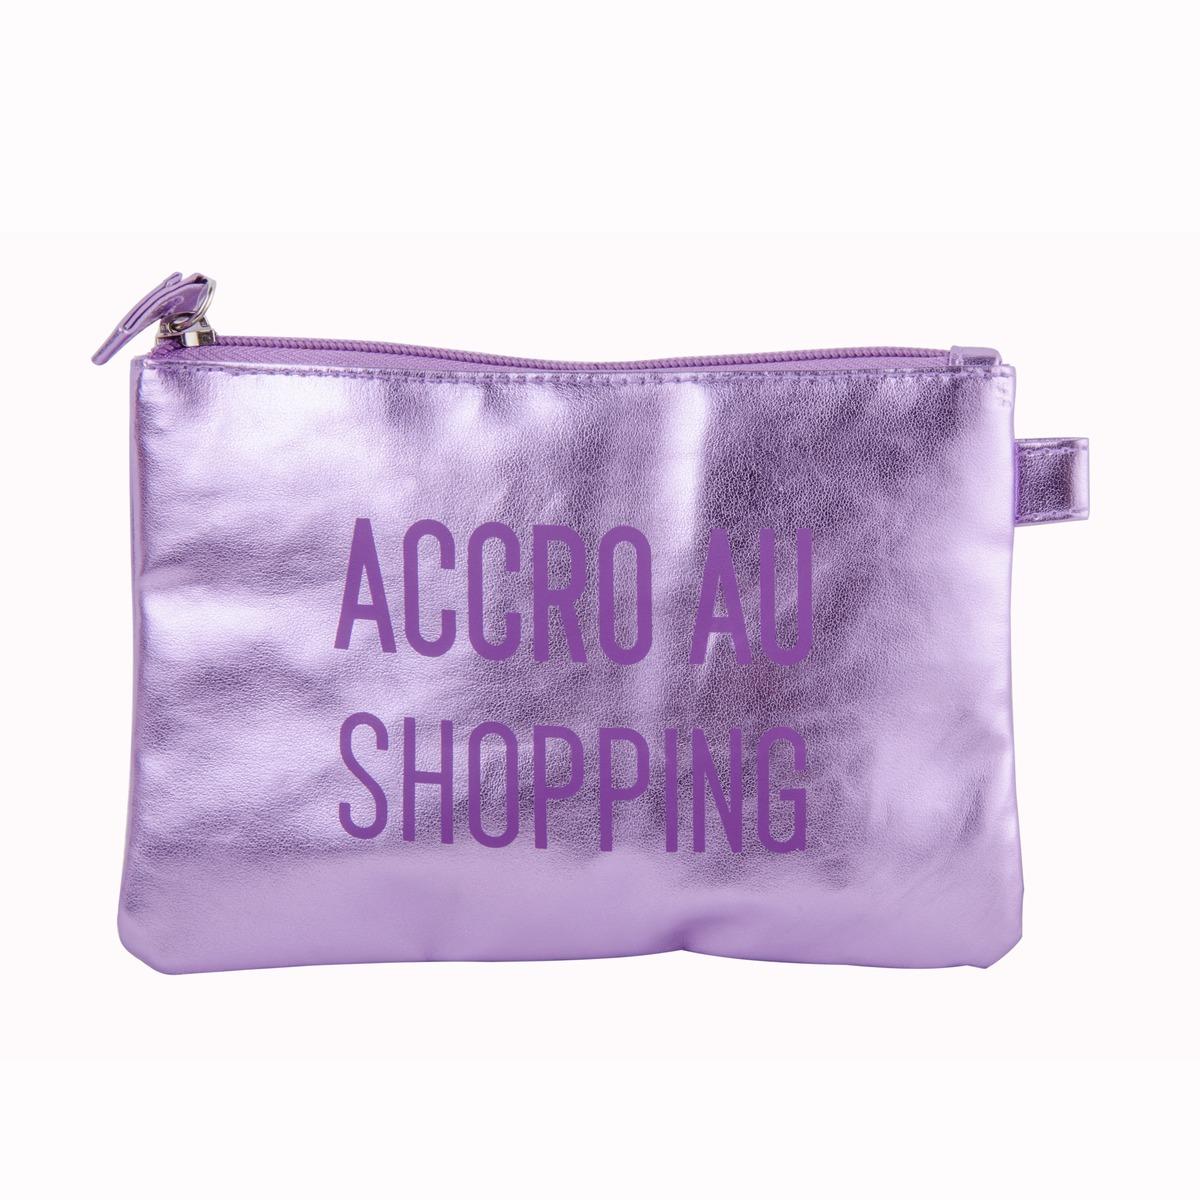 Pochette modèle accro au shopping - 18 x 12 cm - Violet métallisé